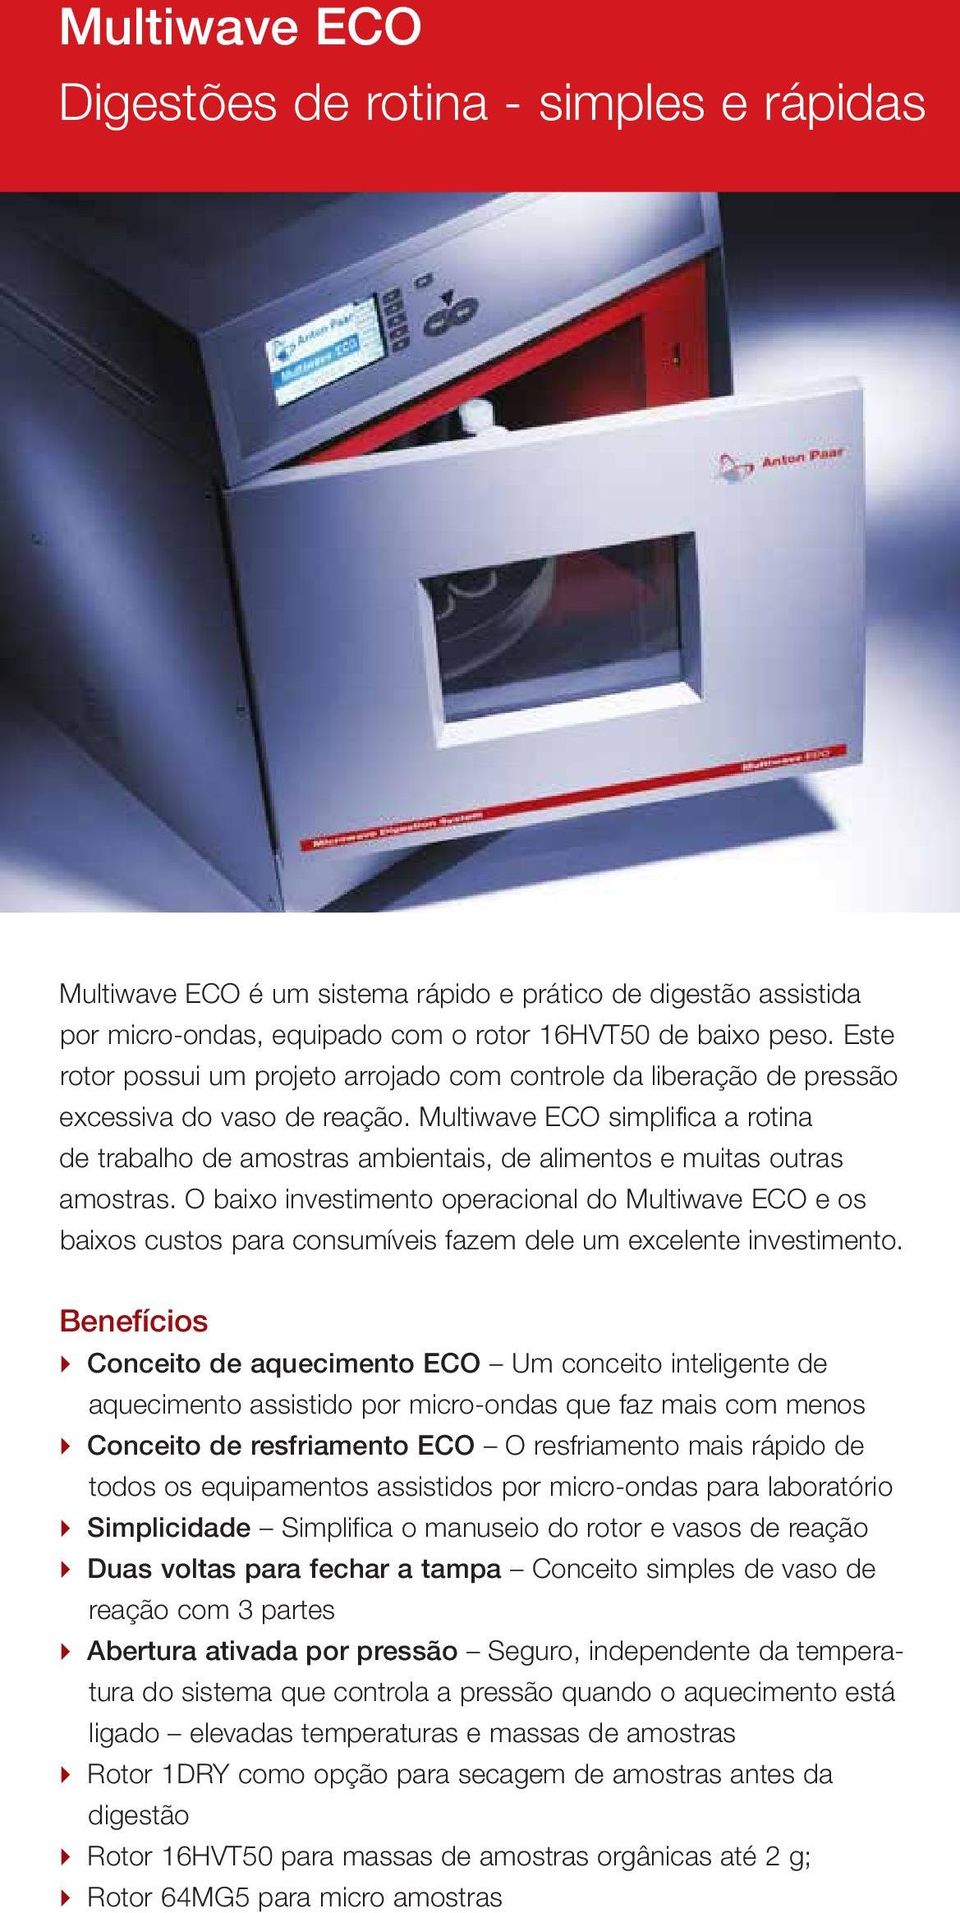 Multiwave ECO simplifica a rotina de trabalho de amostras ambientais, de alimentos e muitas outras amostras.